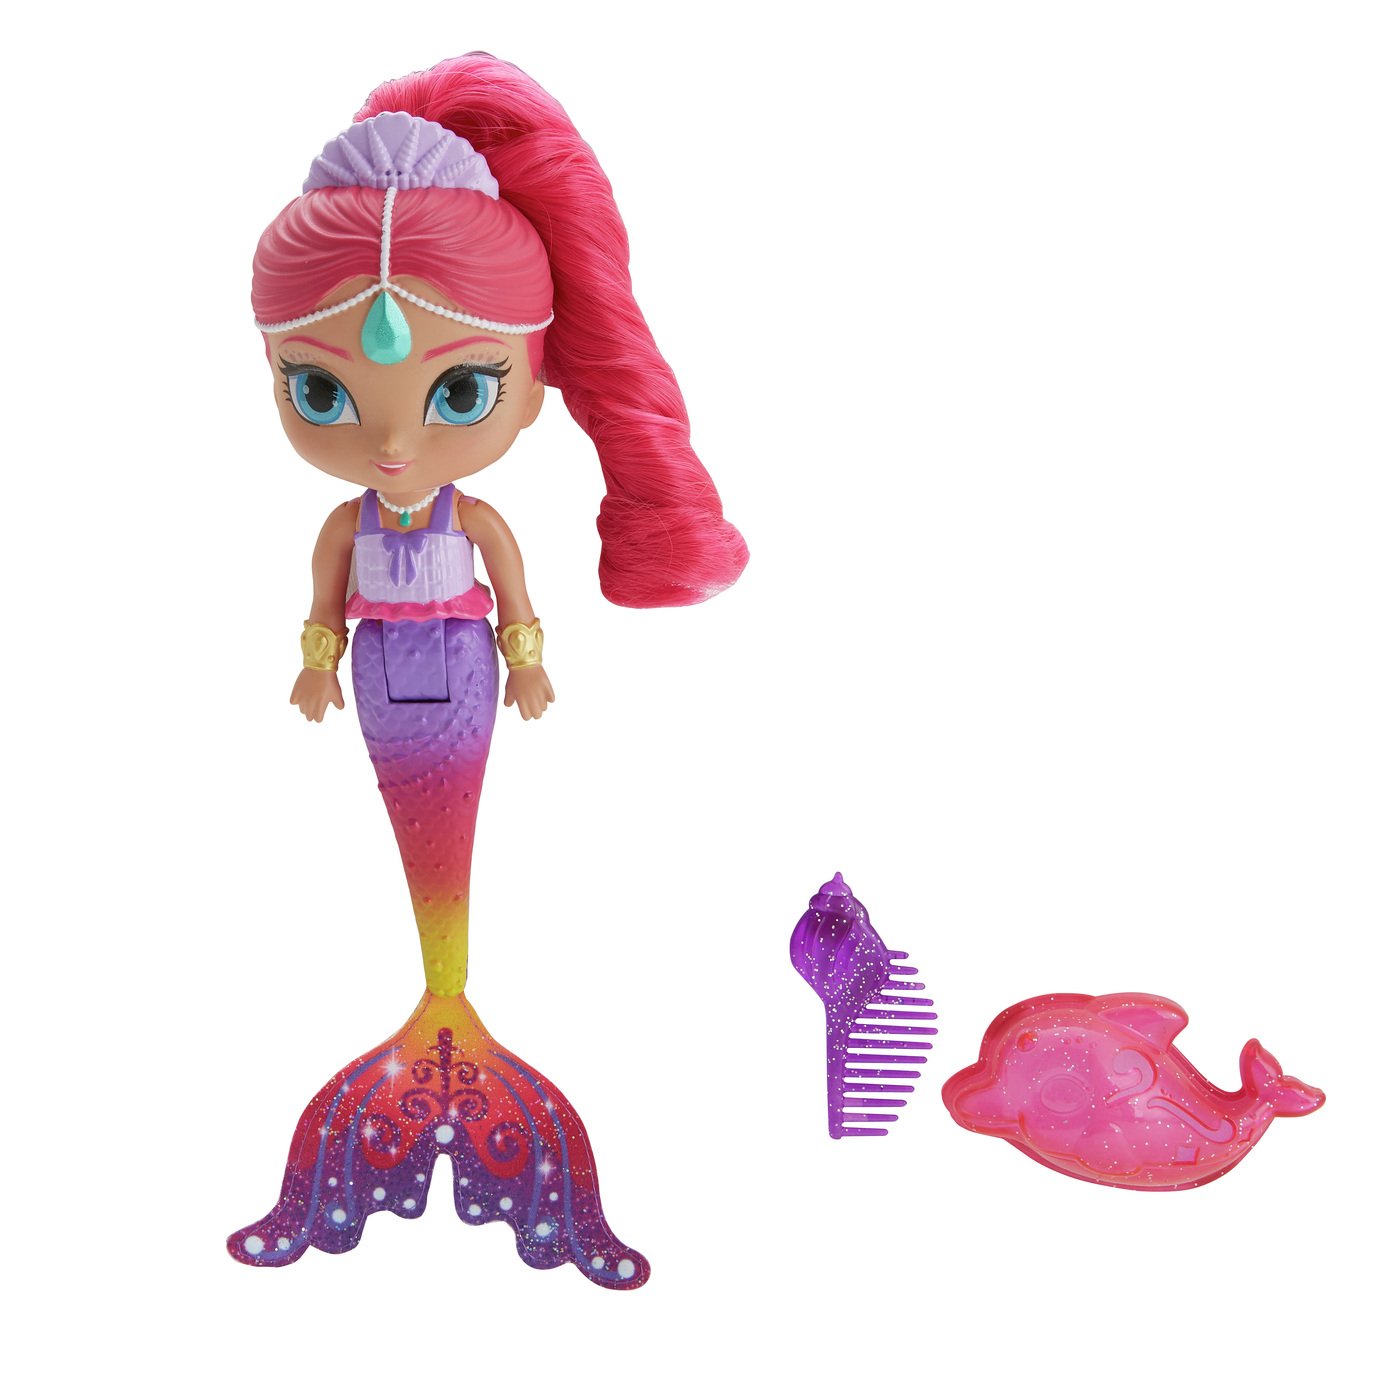 argos mermaid doll